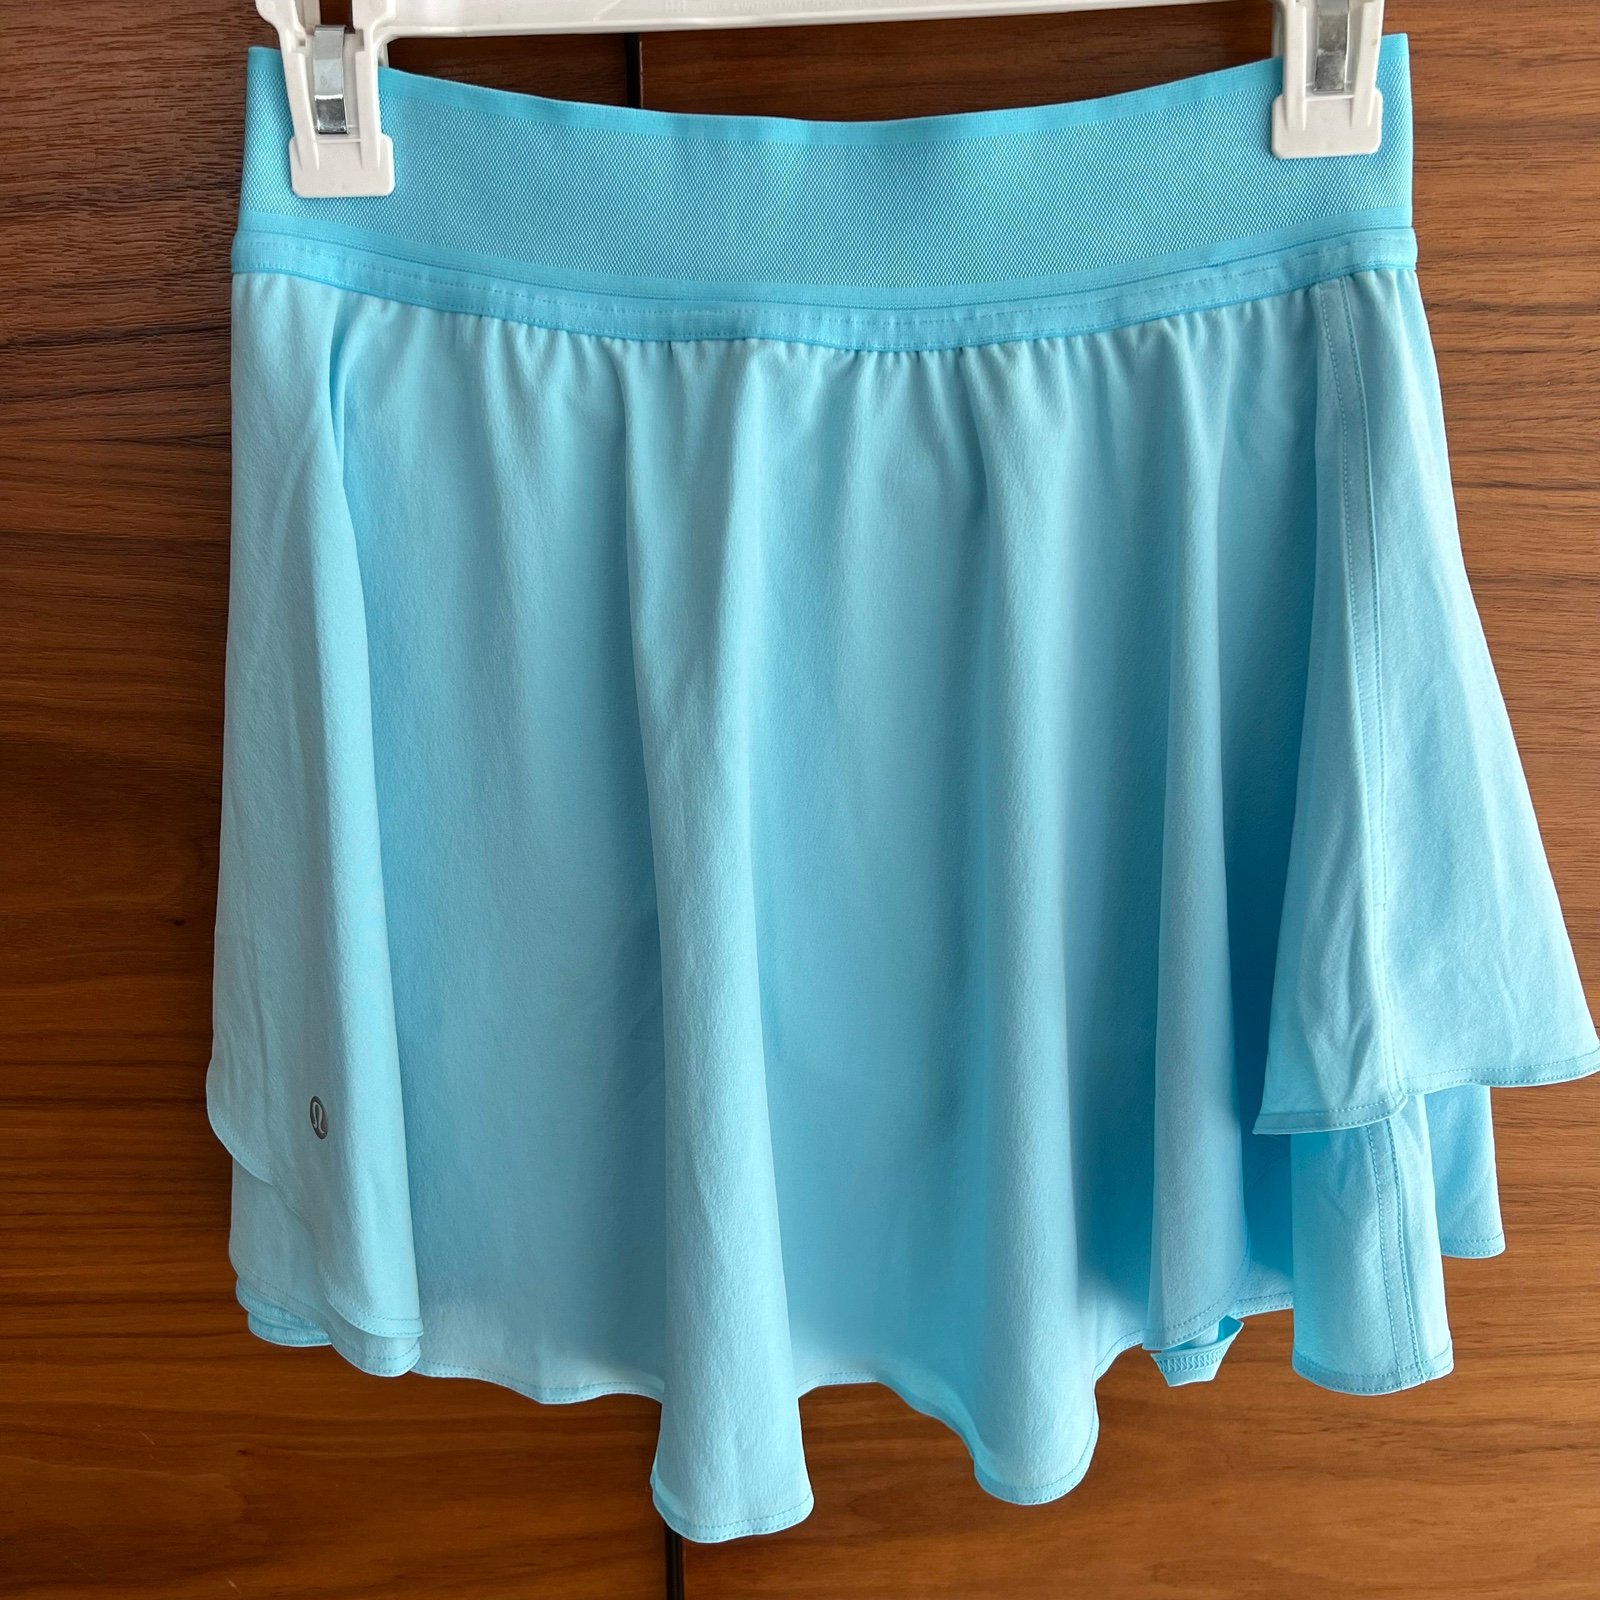 Special offer  NWT Lululemon Court Rival High-Rise Skirt Long Cyan Blue 4 myTZlSTPj Cool